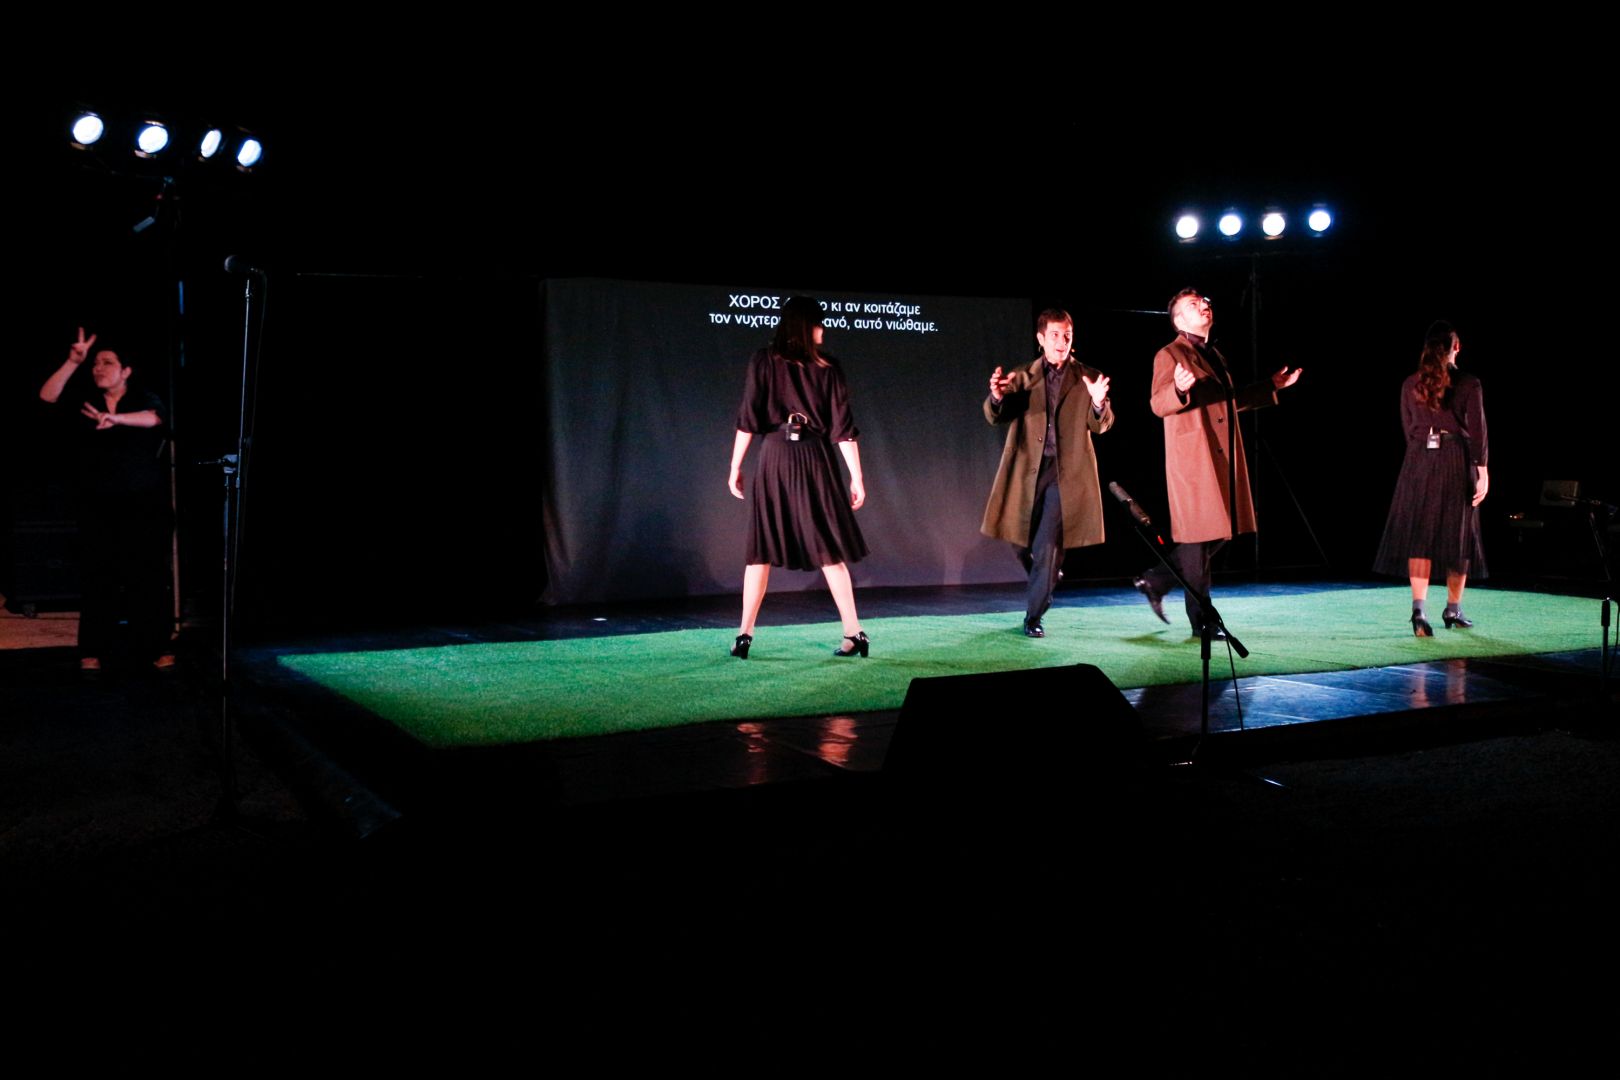 σε μία θεατρική σκηνή με πράσινο πάτωμα τρία άτομα βηματίζουν με μεγάλους δρασκελισμούς ενώ στο πίσω μέρος προβάλλονται υπέρτιτλοι